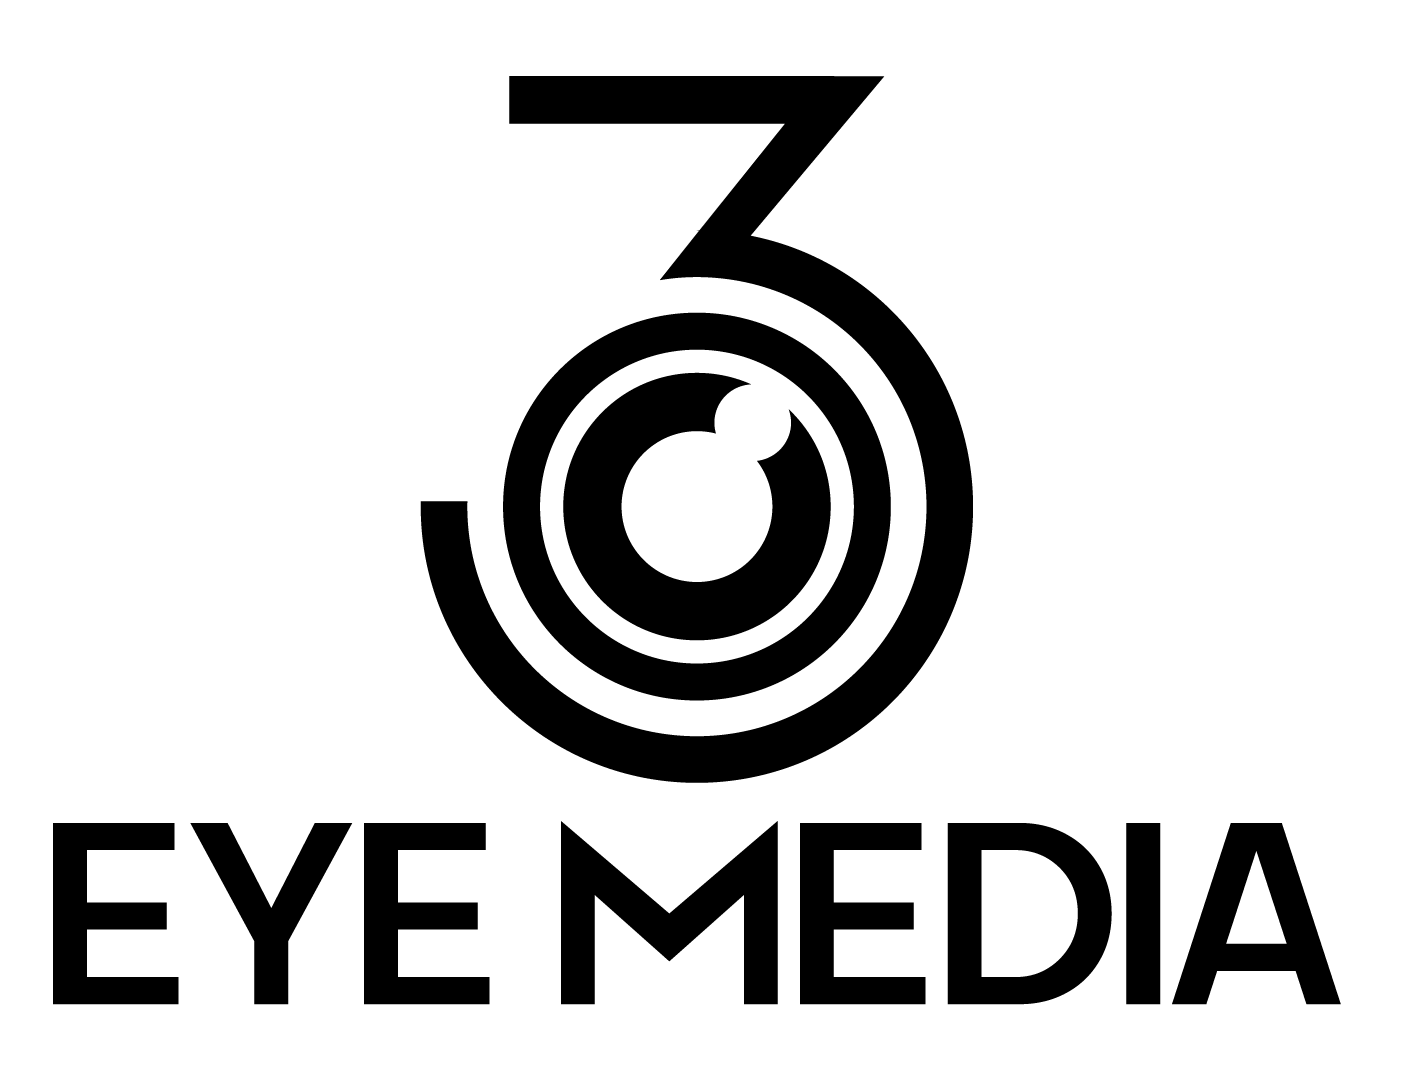 3 Eye Media